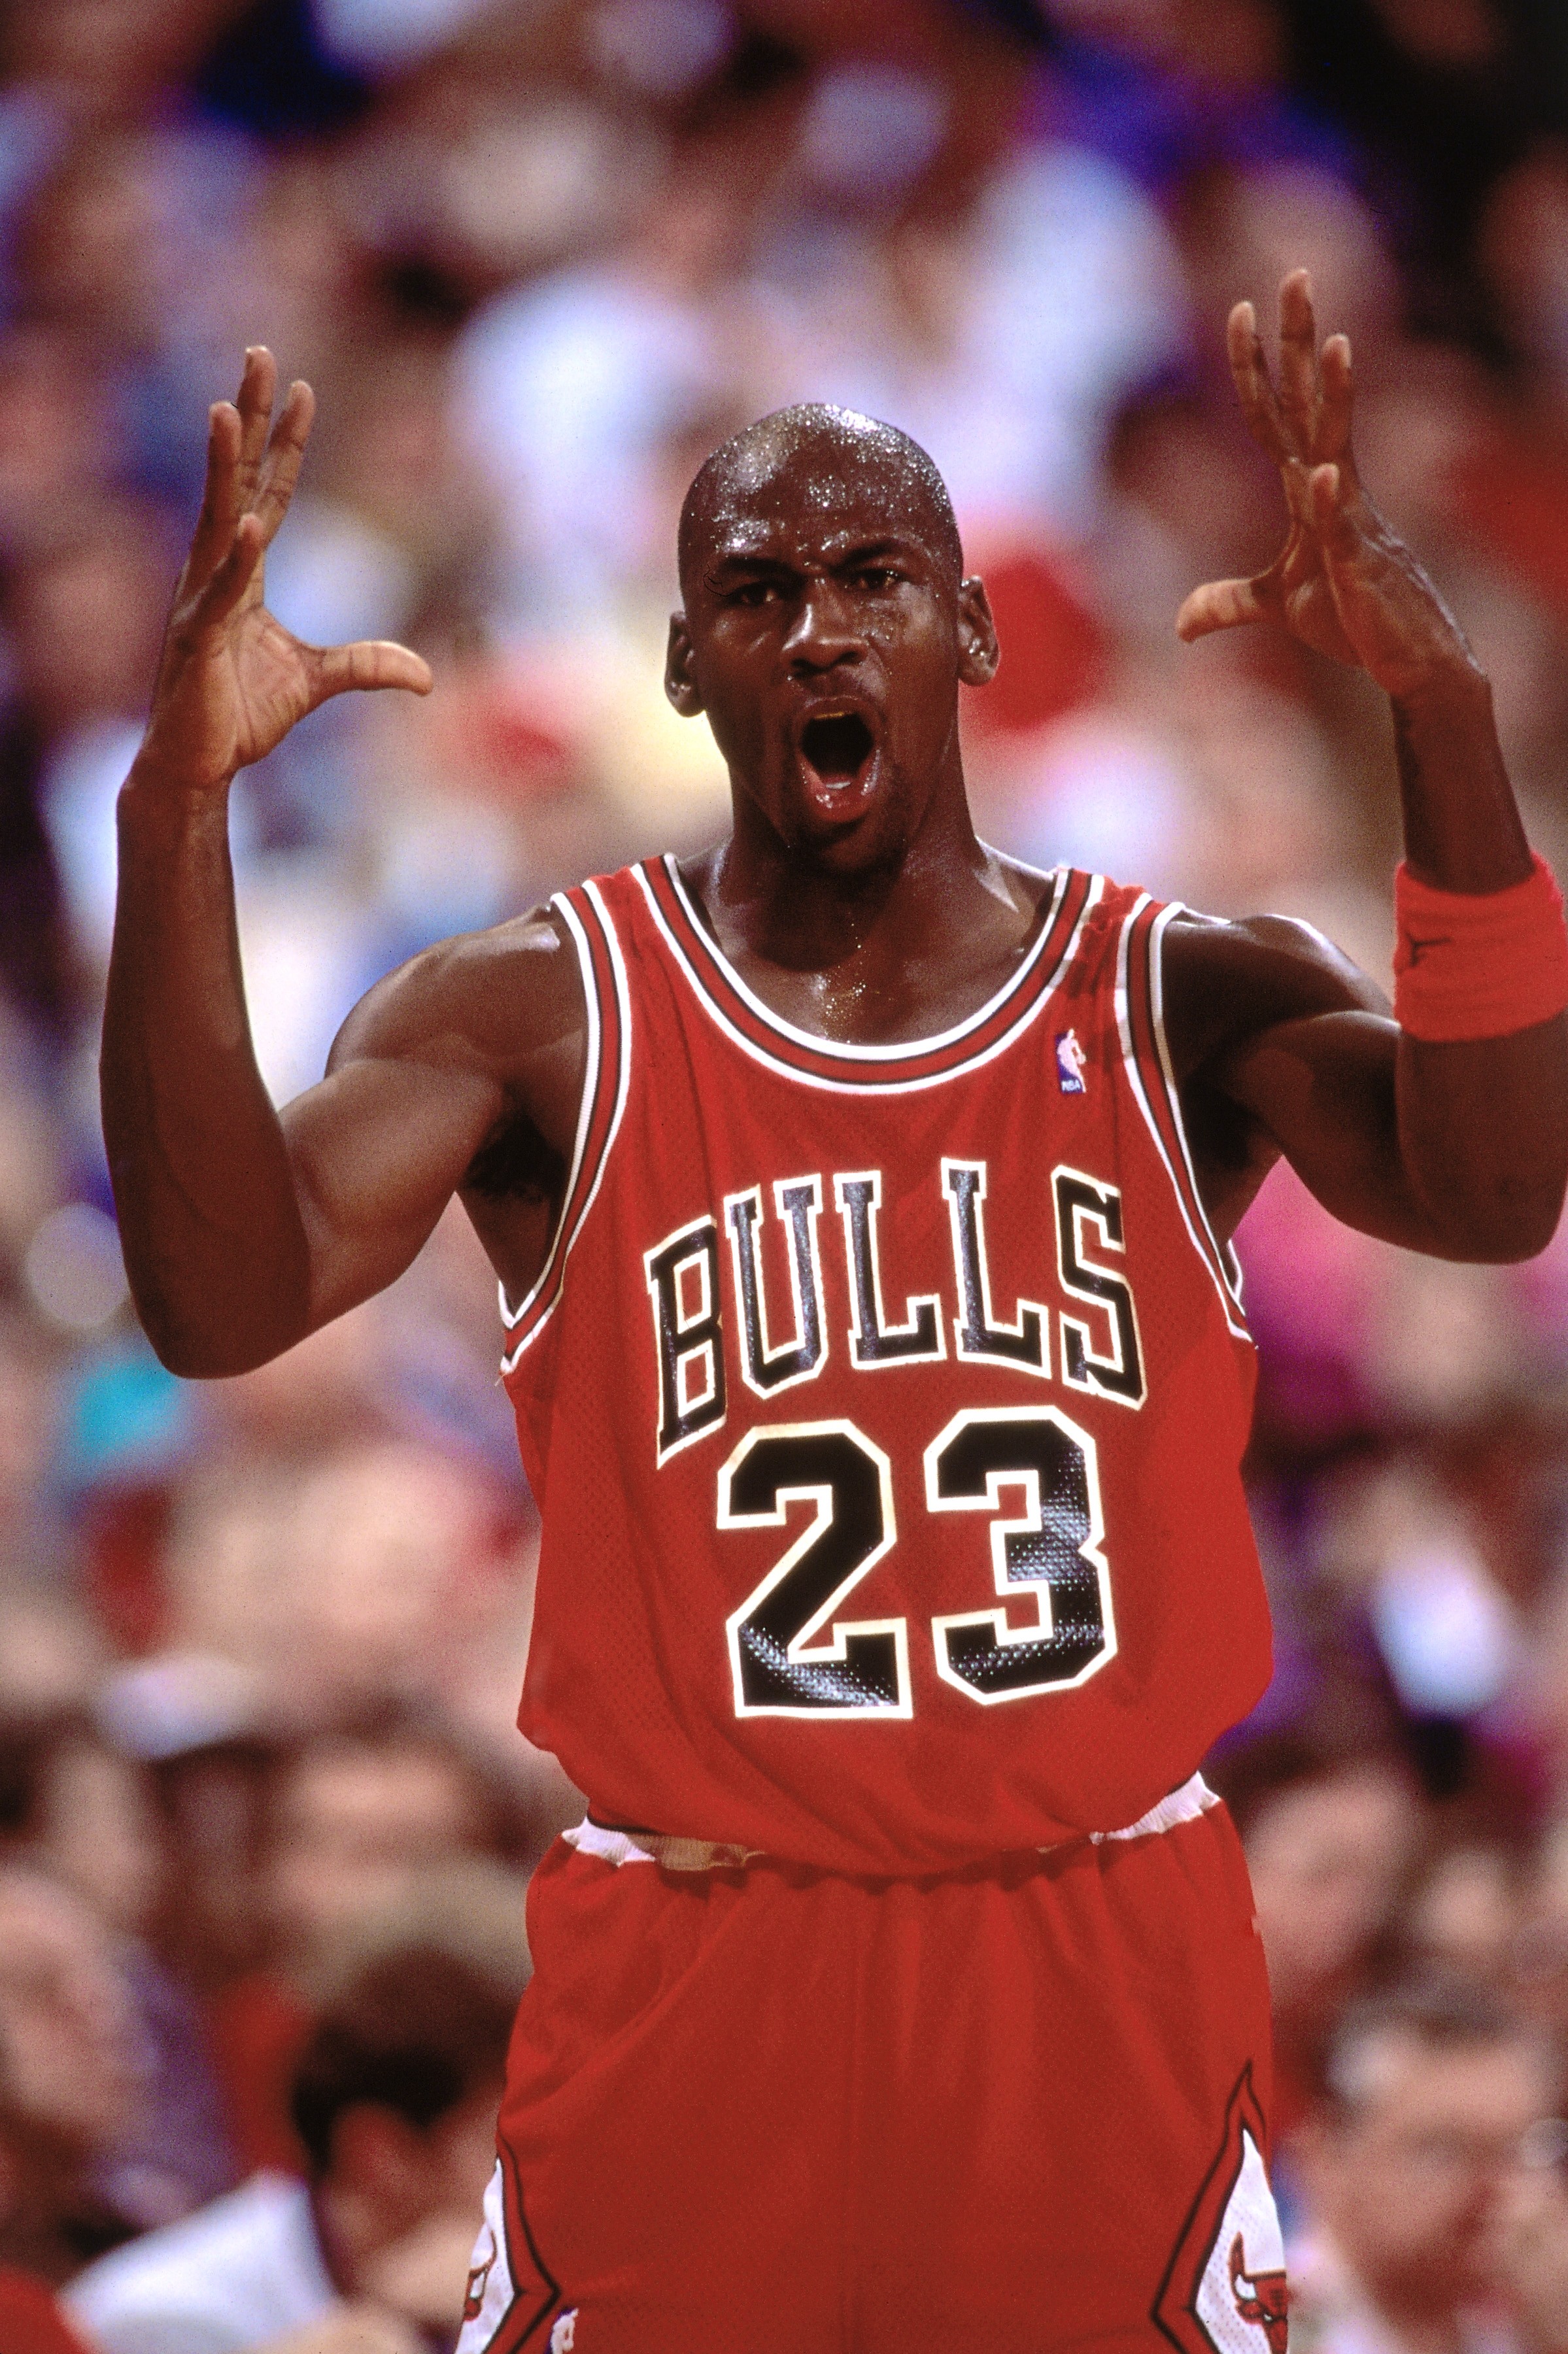 Michael Jordan in the 90s : r/IASIP